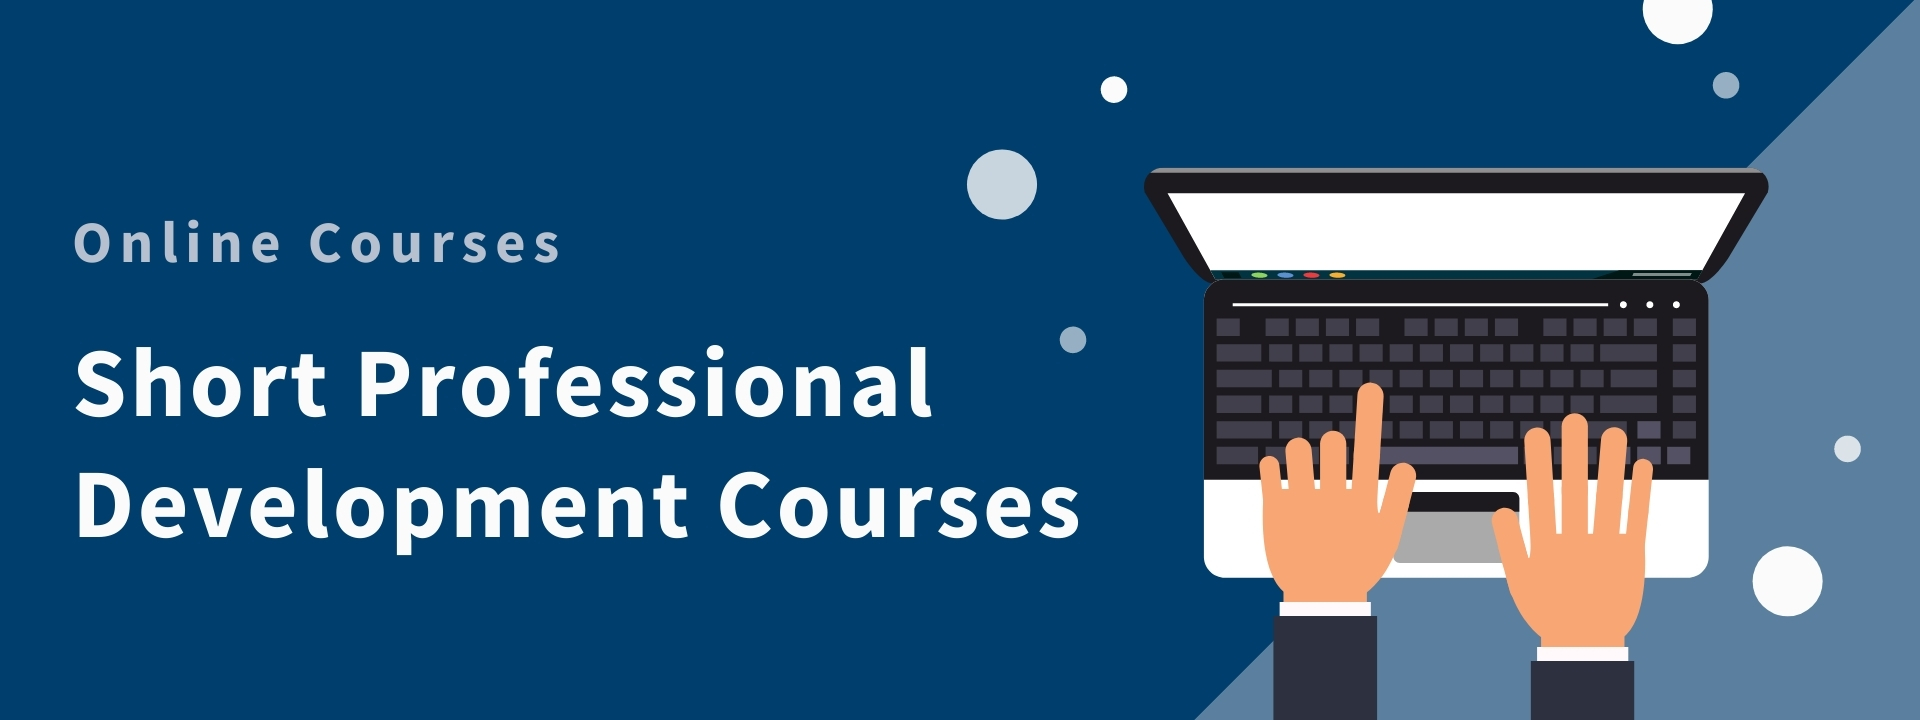 Short Professional Development Courses